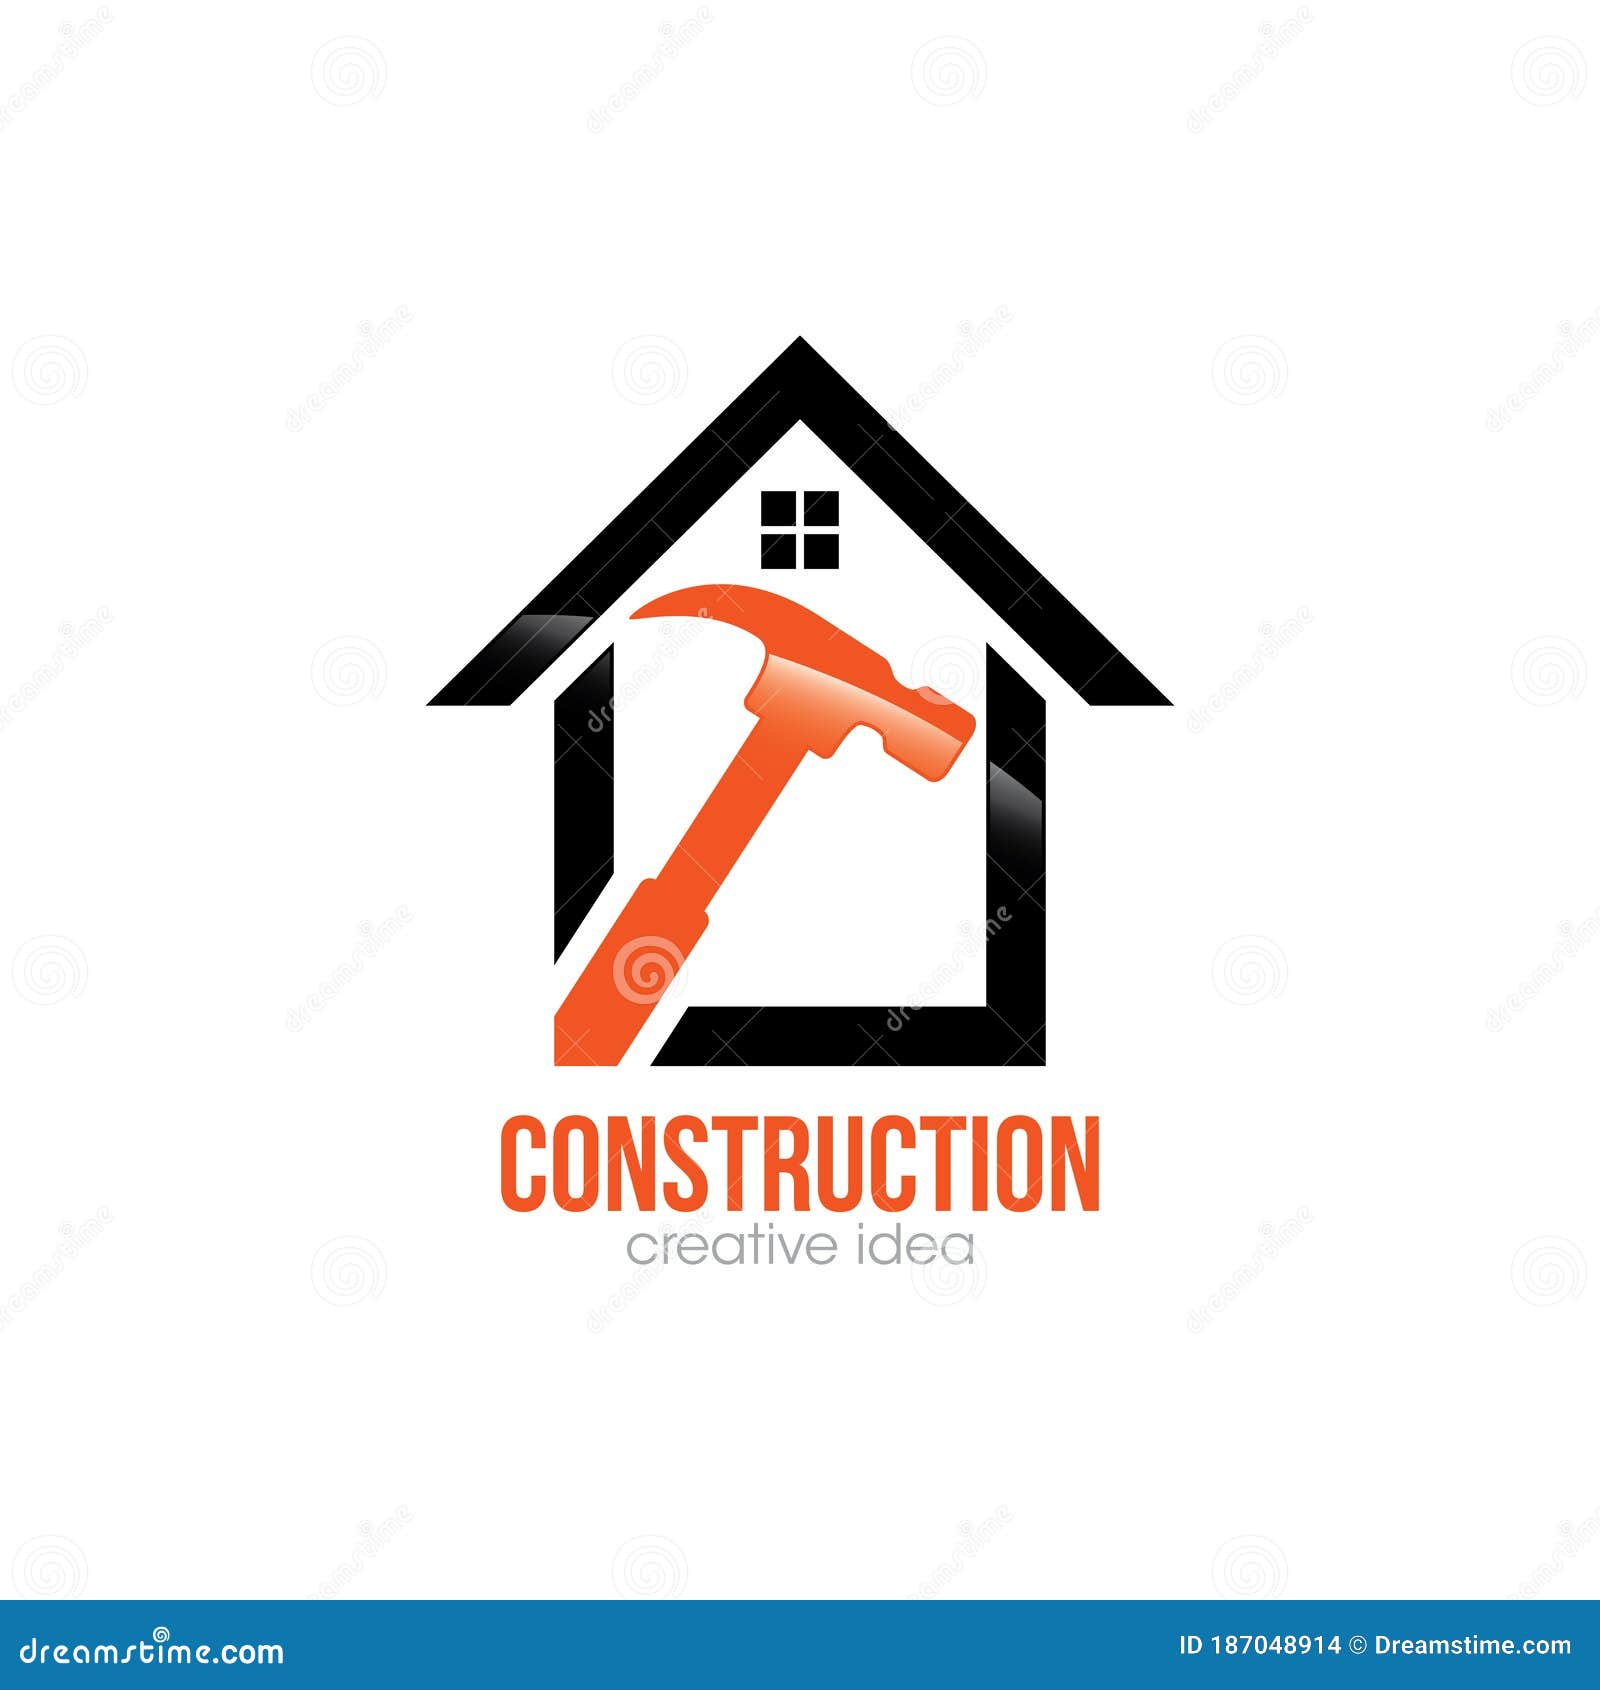 Creative Home Construction Concept Logo Design Template Stock Vector ...